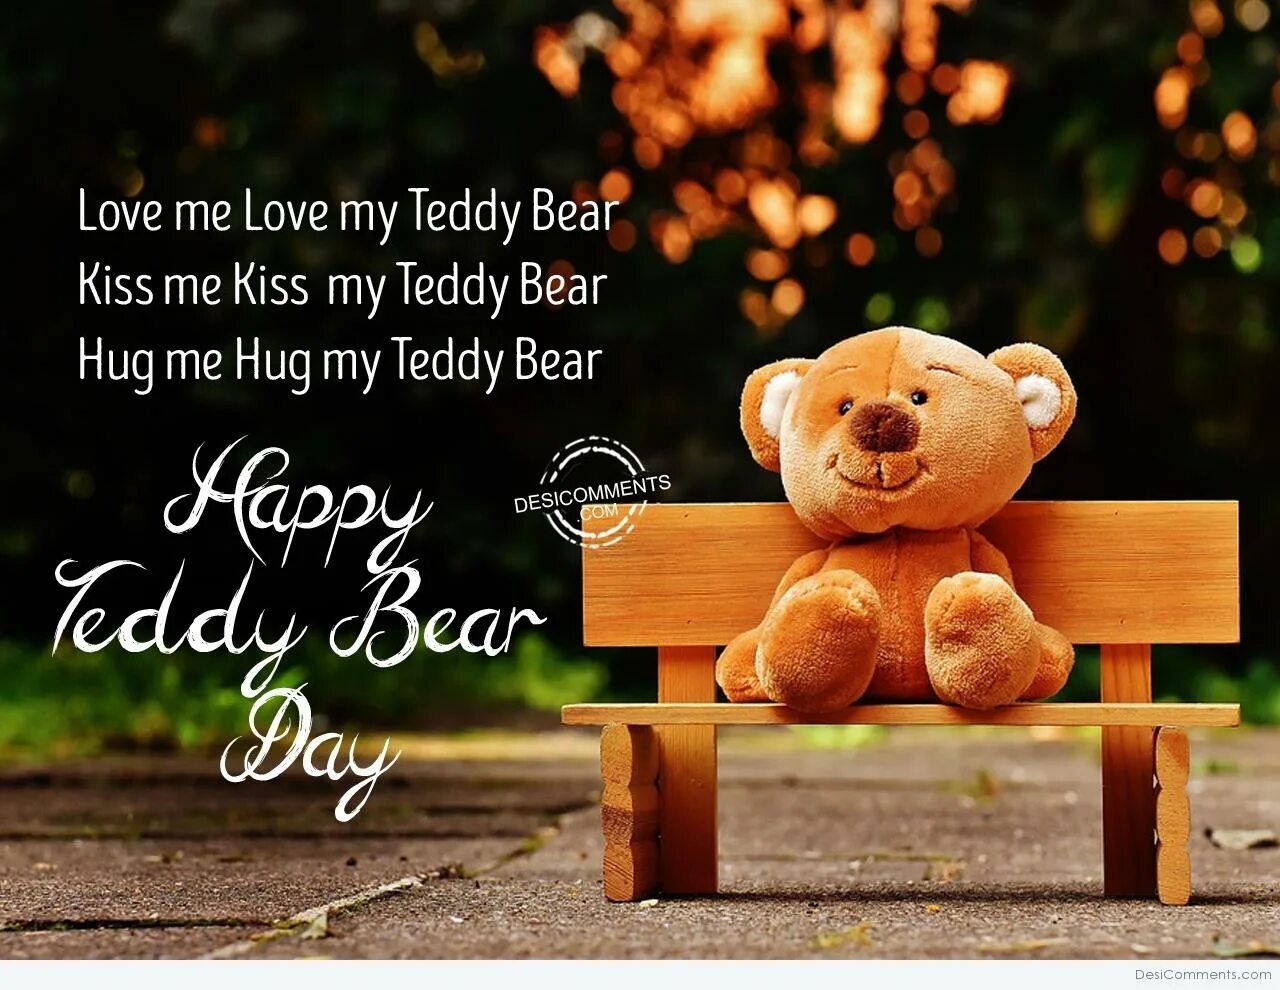 This is my teddy. My Teddy Bear. My Lovely Teddy. Грустный плюшевый мишка. Teddy Love.